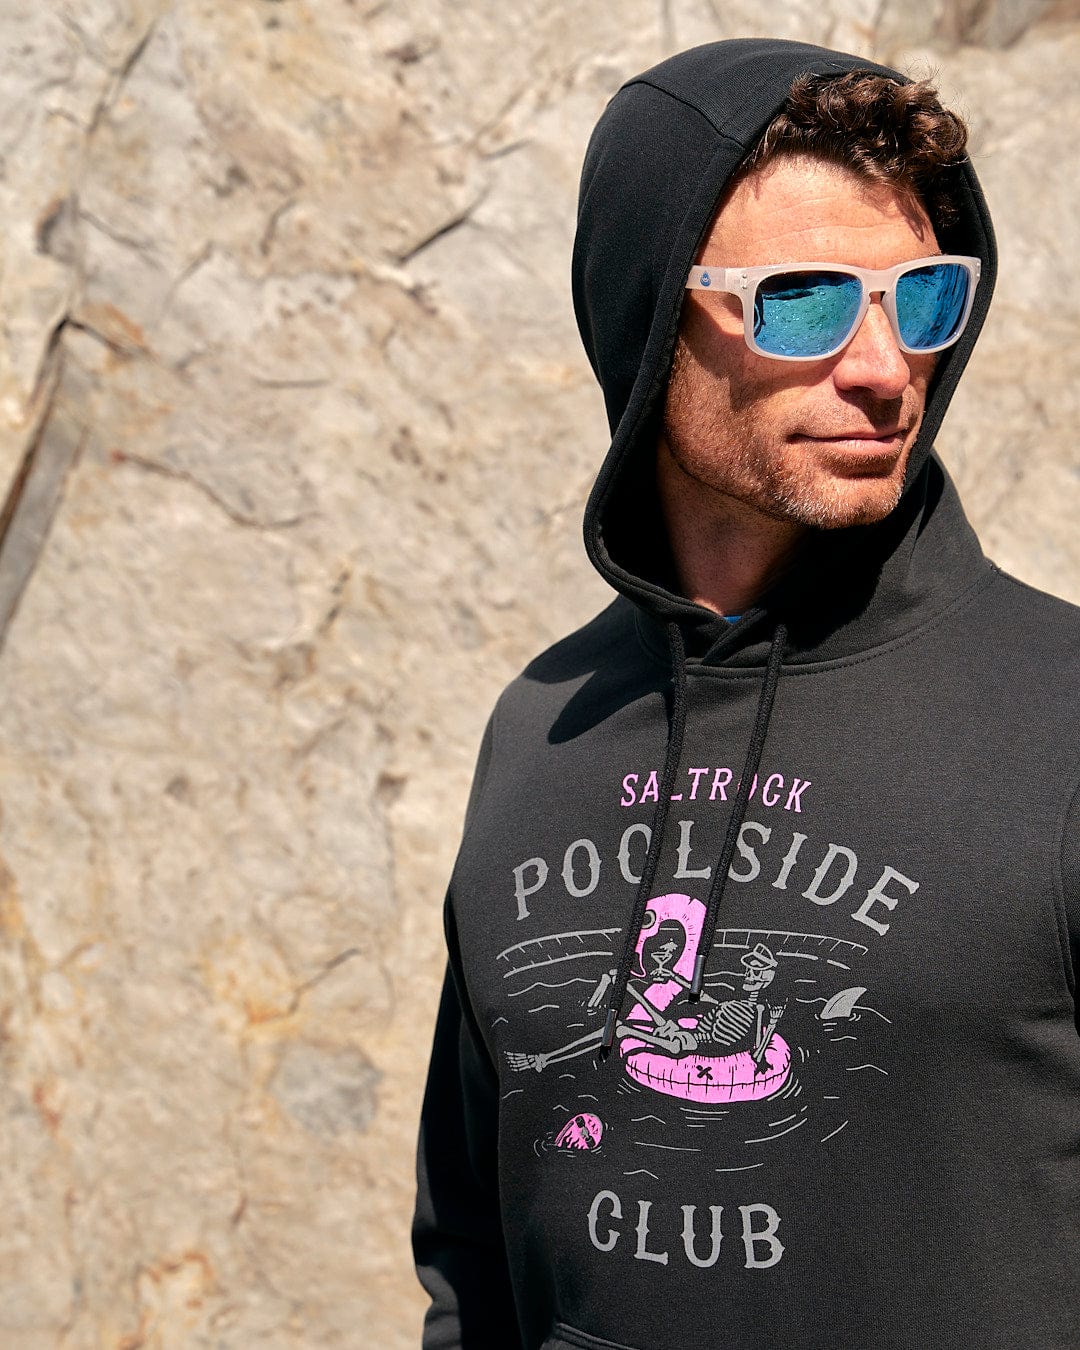 A man wearing a Saltrock hoodie with the words "Poolside - Mens Pop Hoodie - Black" on it.